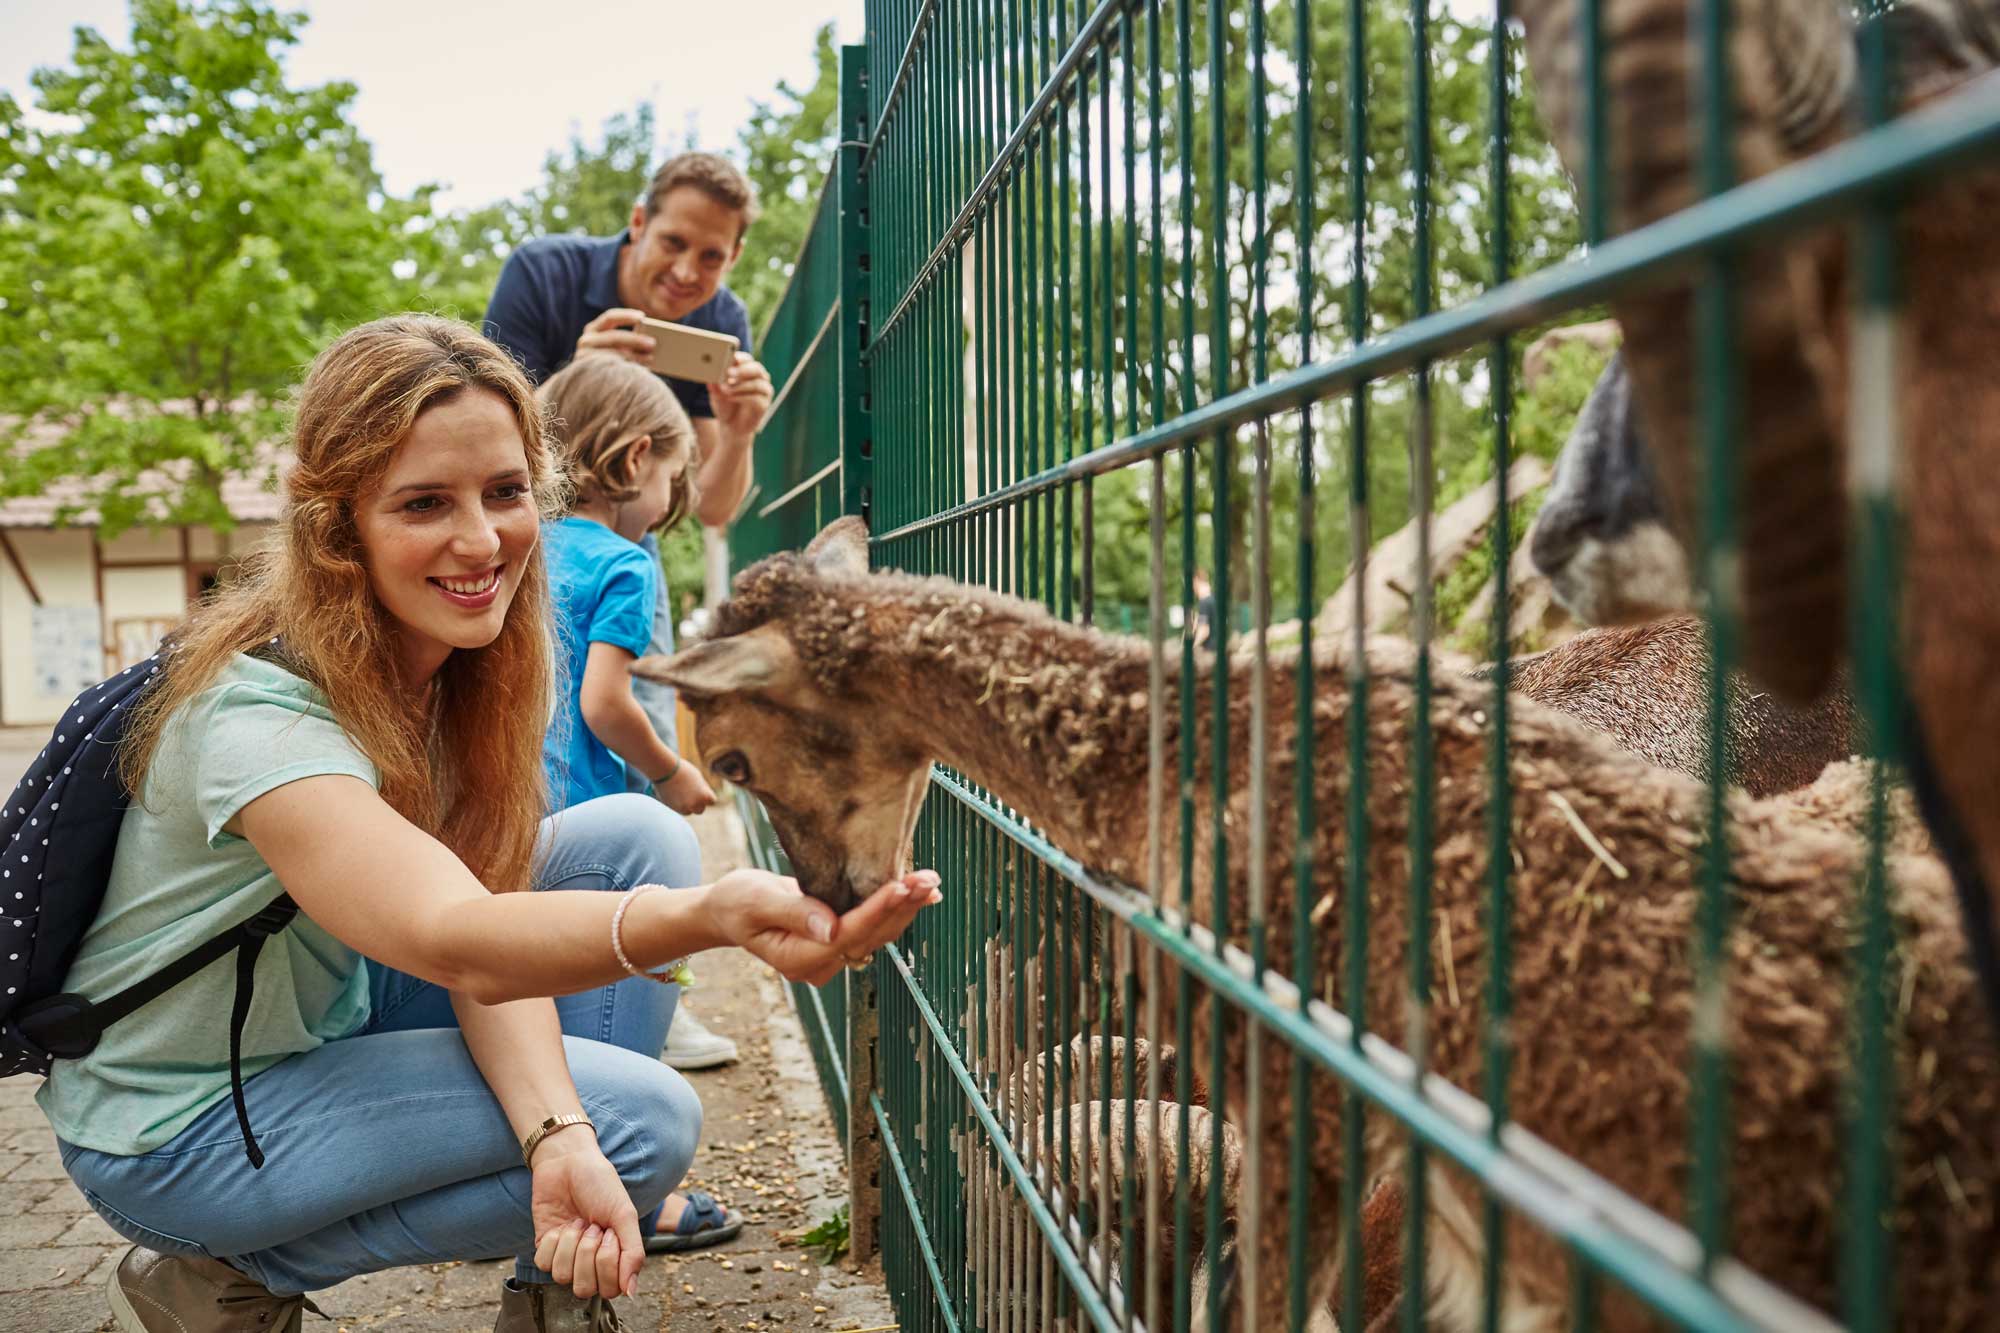 Eine Frau füttert eine Ziege, die in einem Gehege hinter einem grünen Zaun steht. Ein Mann und ein Kind stehen hinter der Frau.